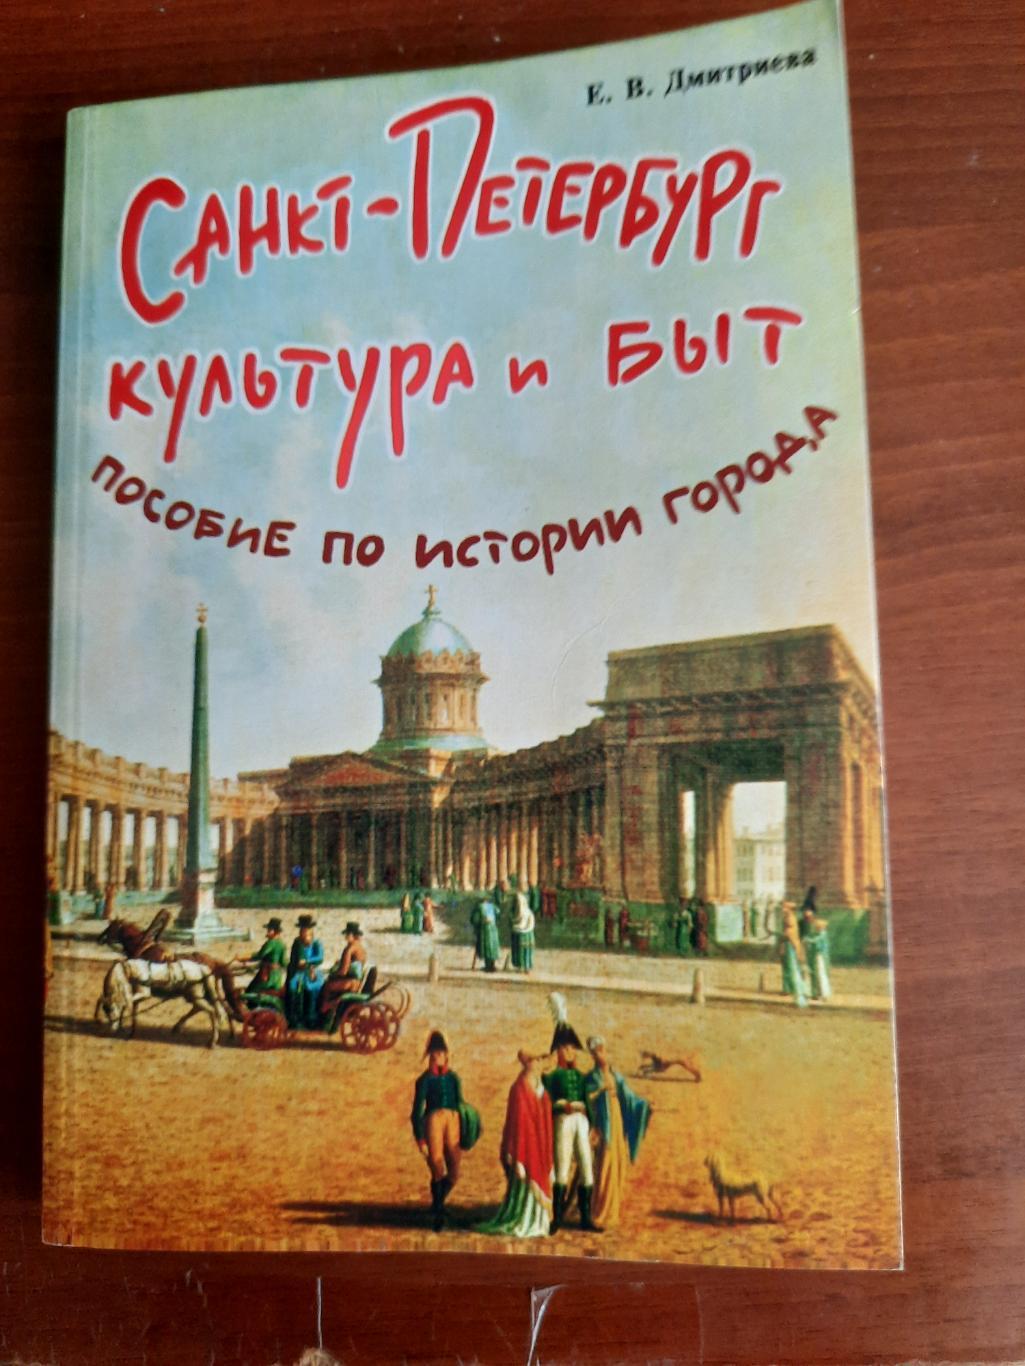 Санкт Петербург культура и быт Пособие по истории города